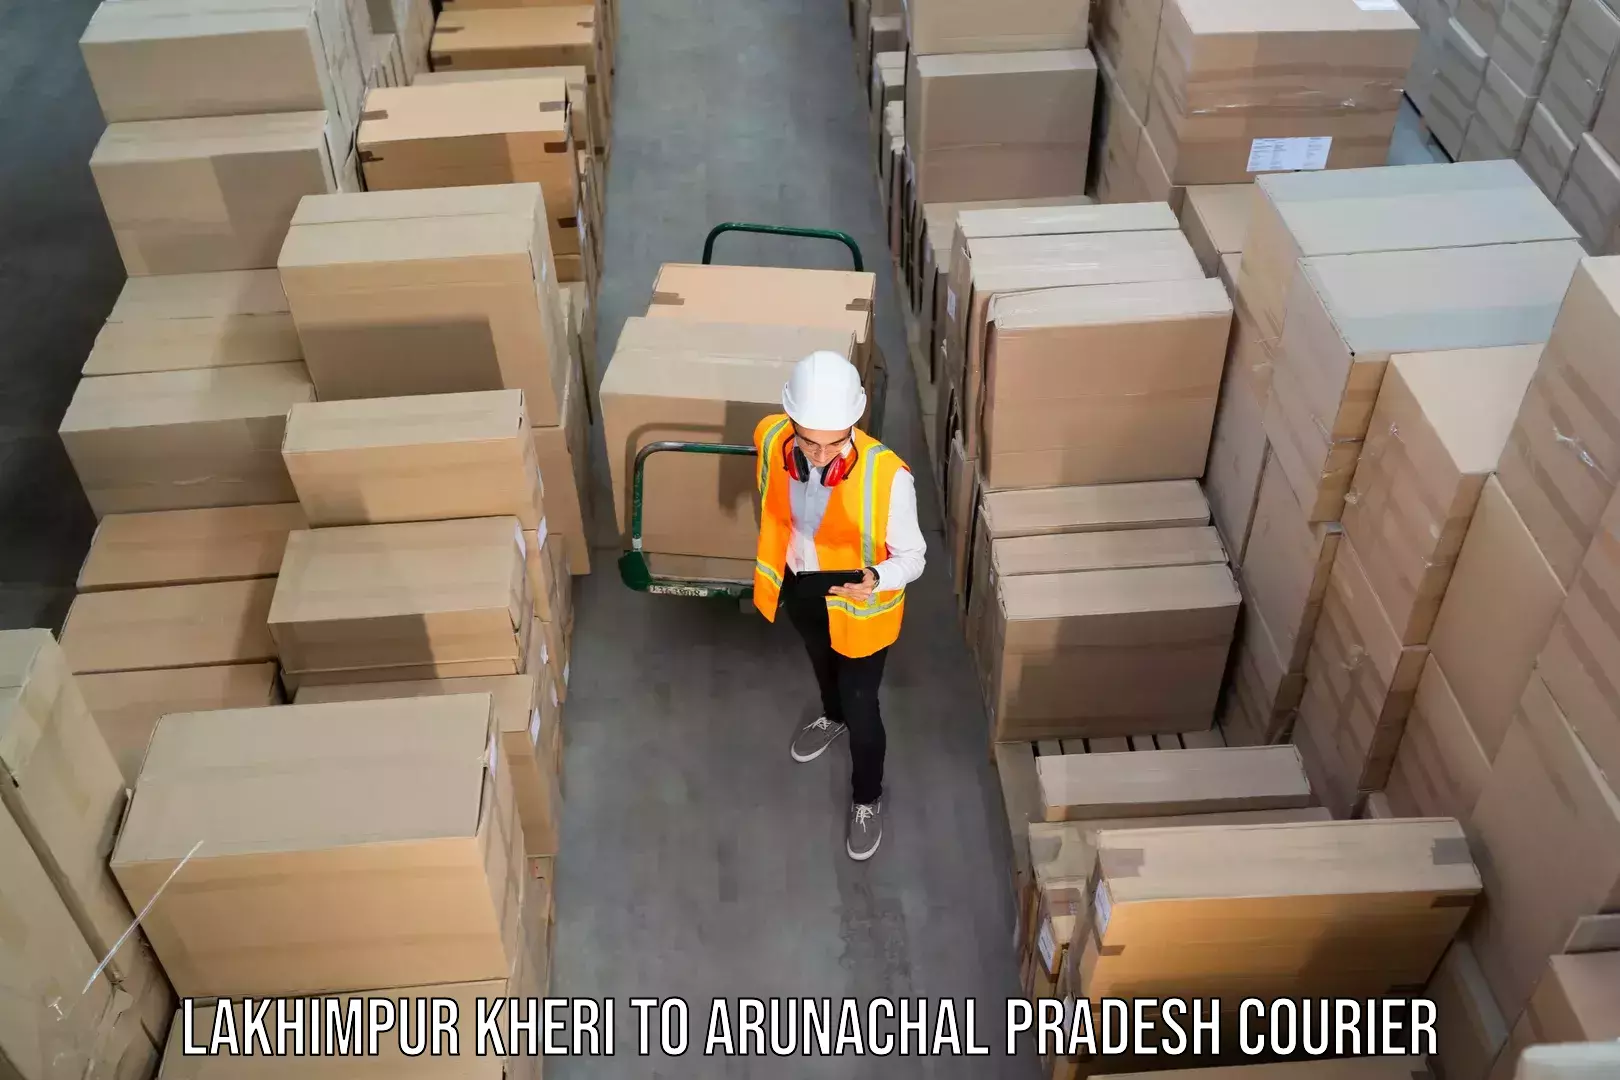 Versatile courier offerings Lakhimpur Kheri to Arunachal Pradesh